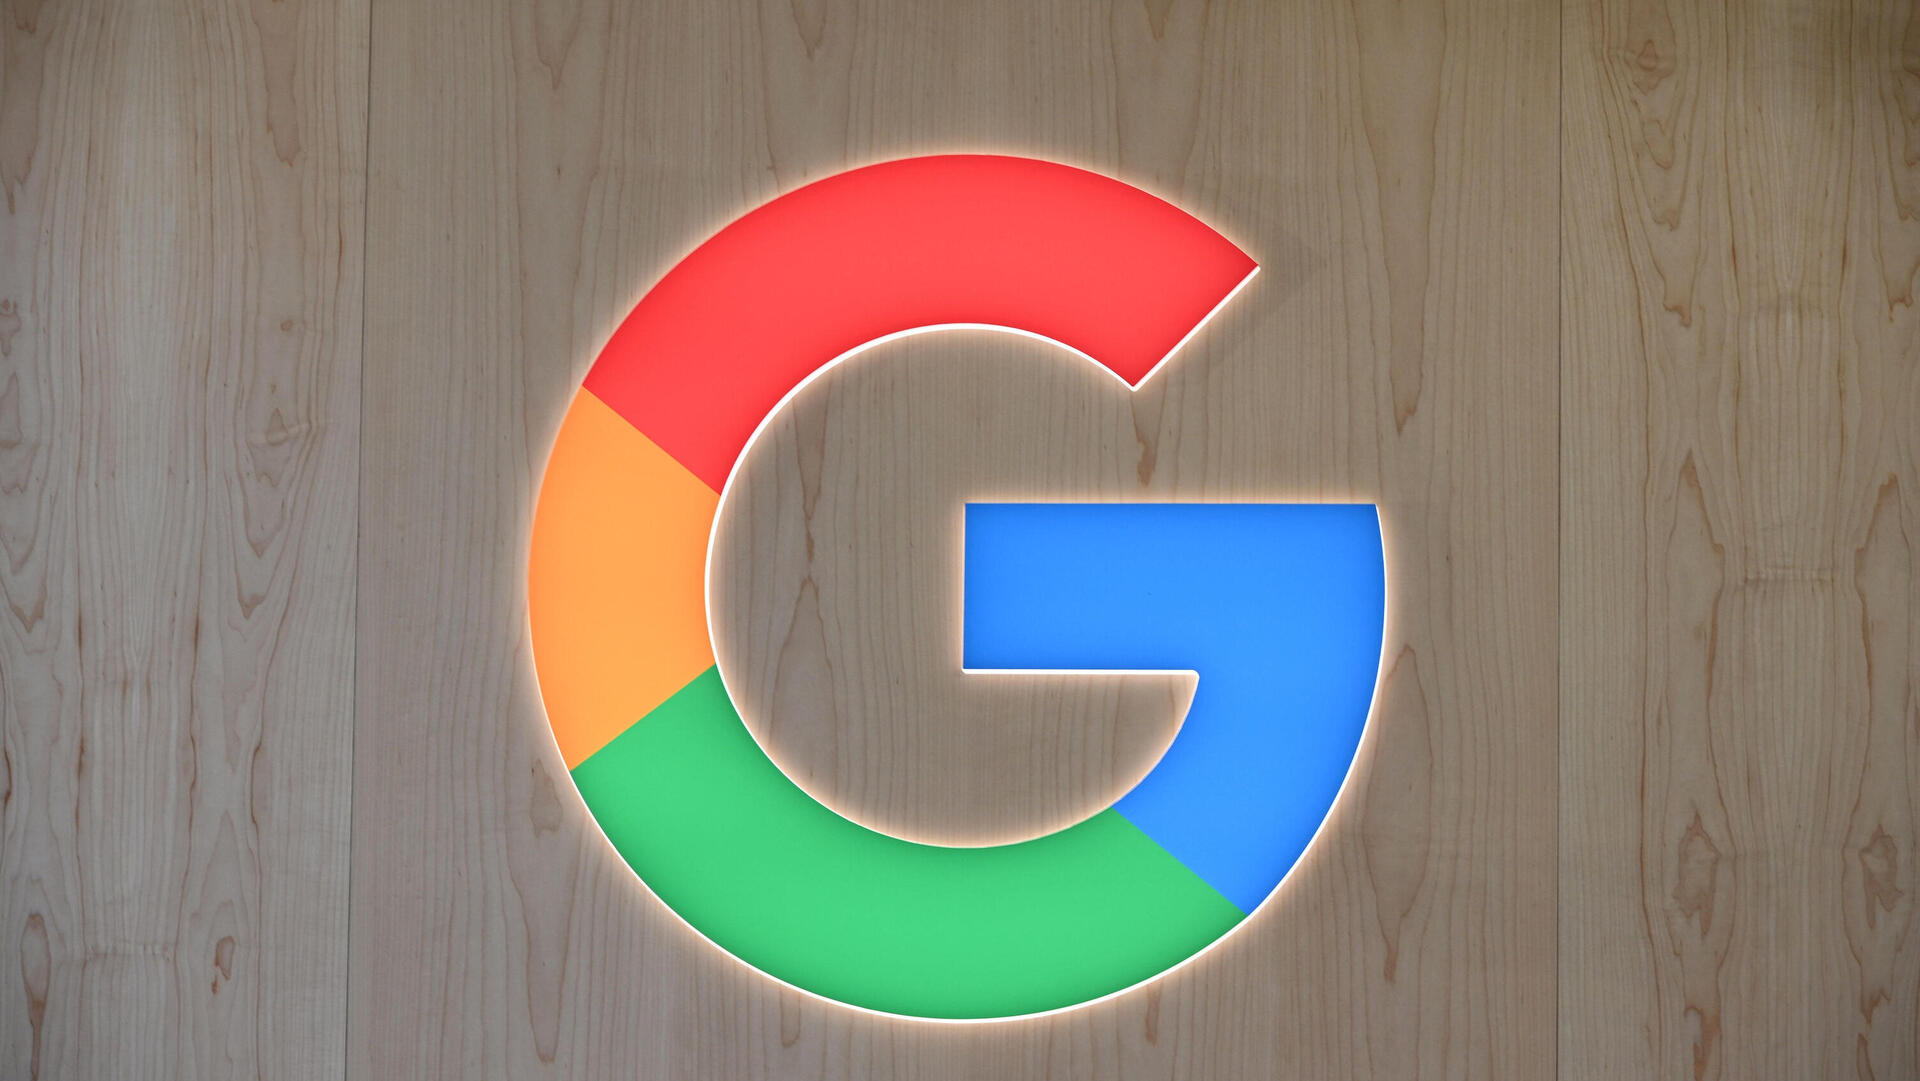 גוגל לוגו